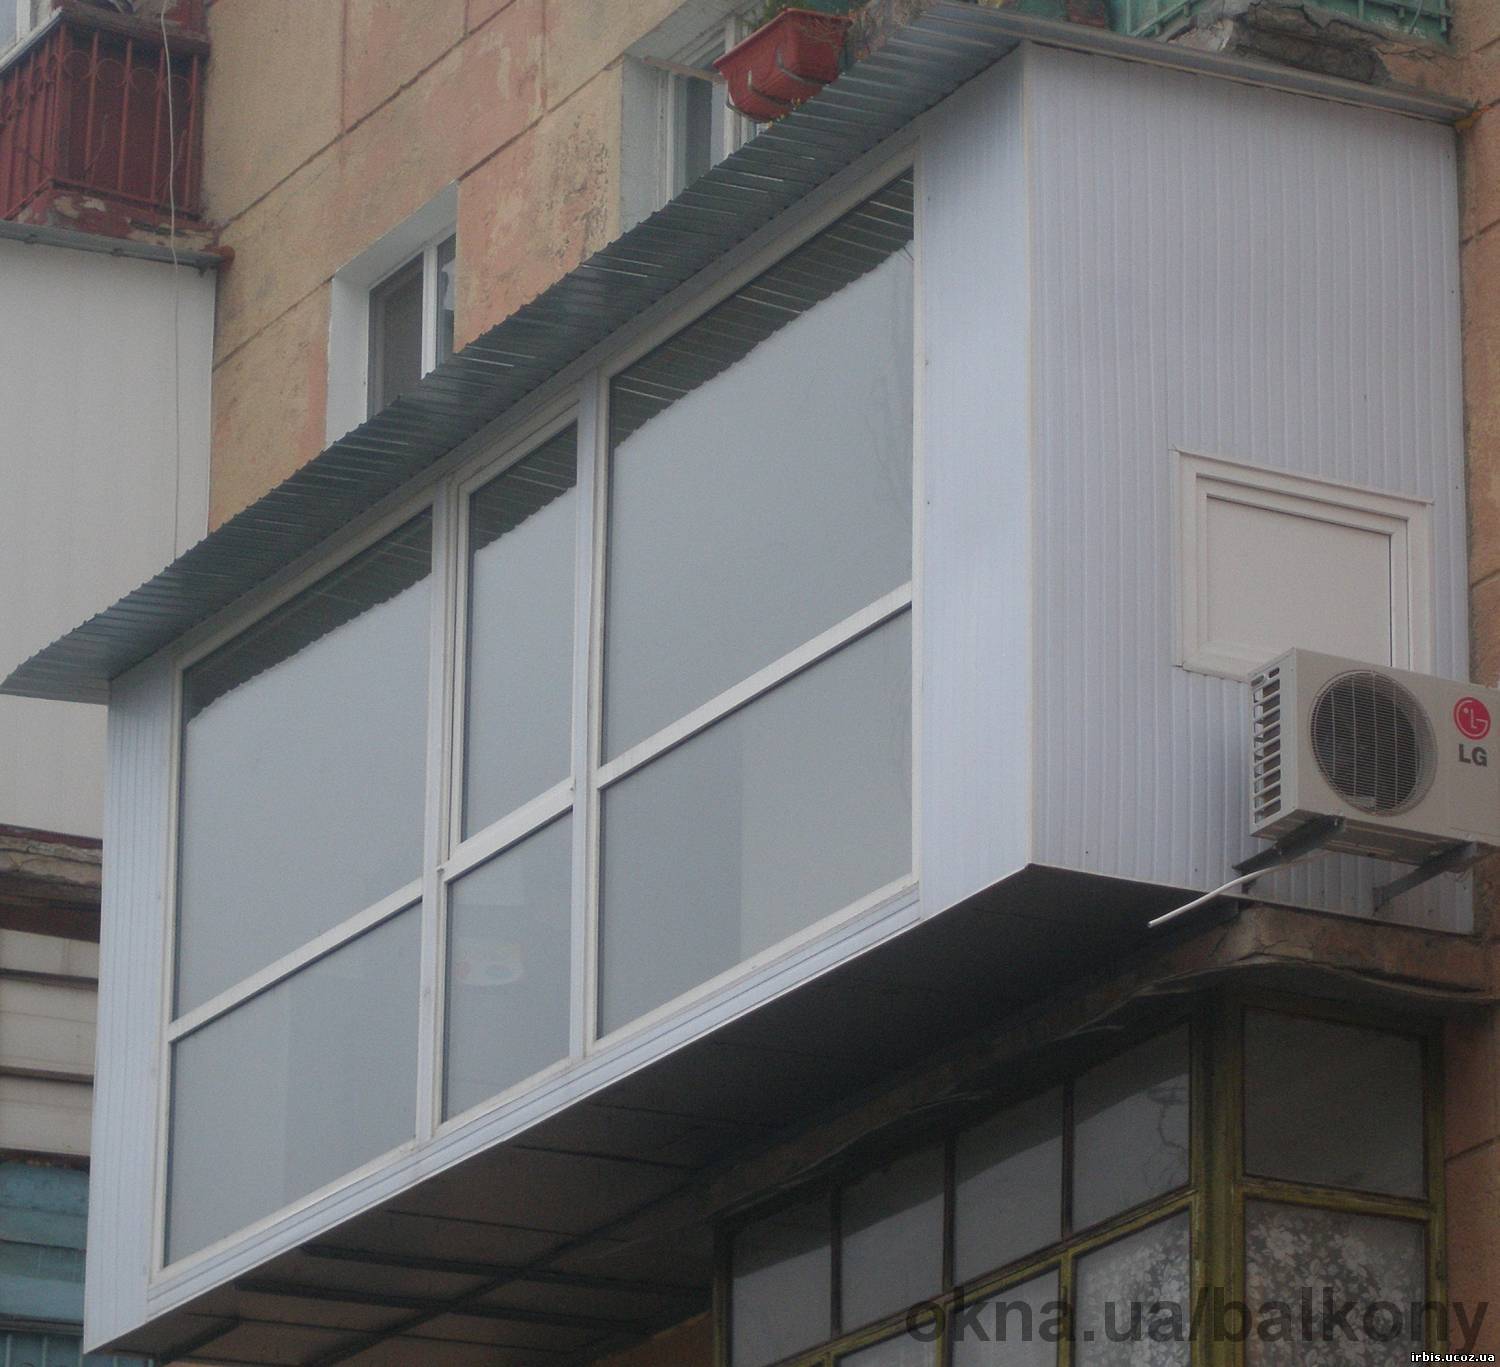 Балкон под ключ полтава купить, заказать, цены. компания ремонт и реставрация балконов.
